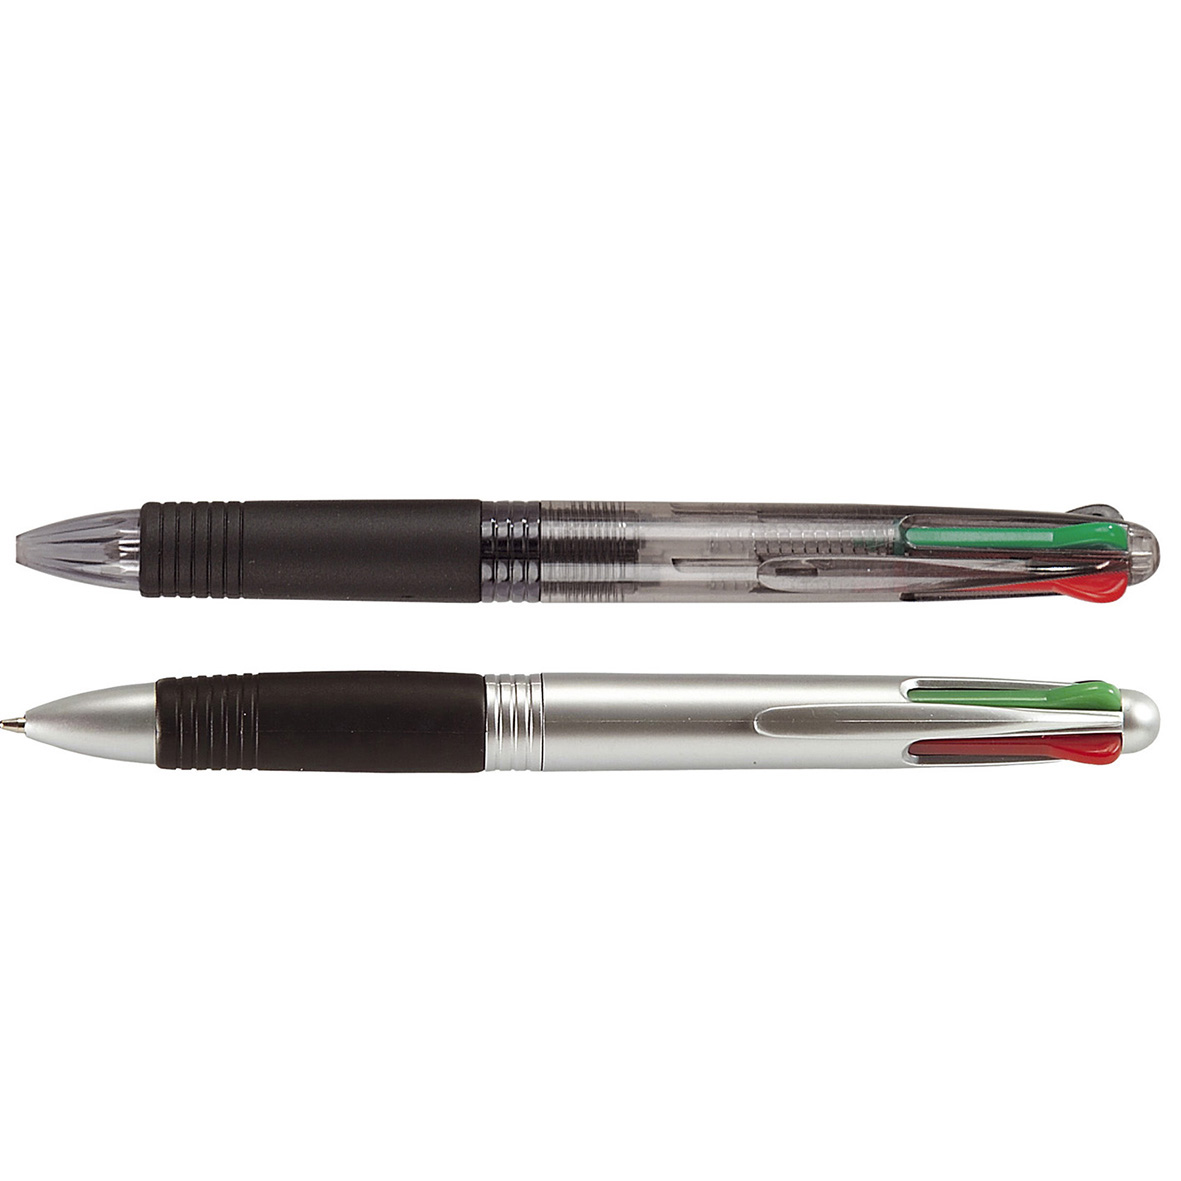 Stylo bille publicitaire quatre couleurs cote324 - Multimines - stylo multifonction